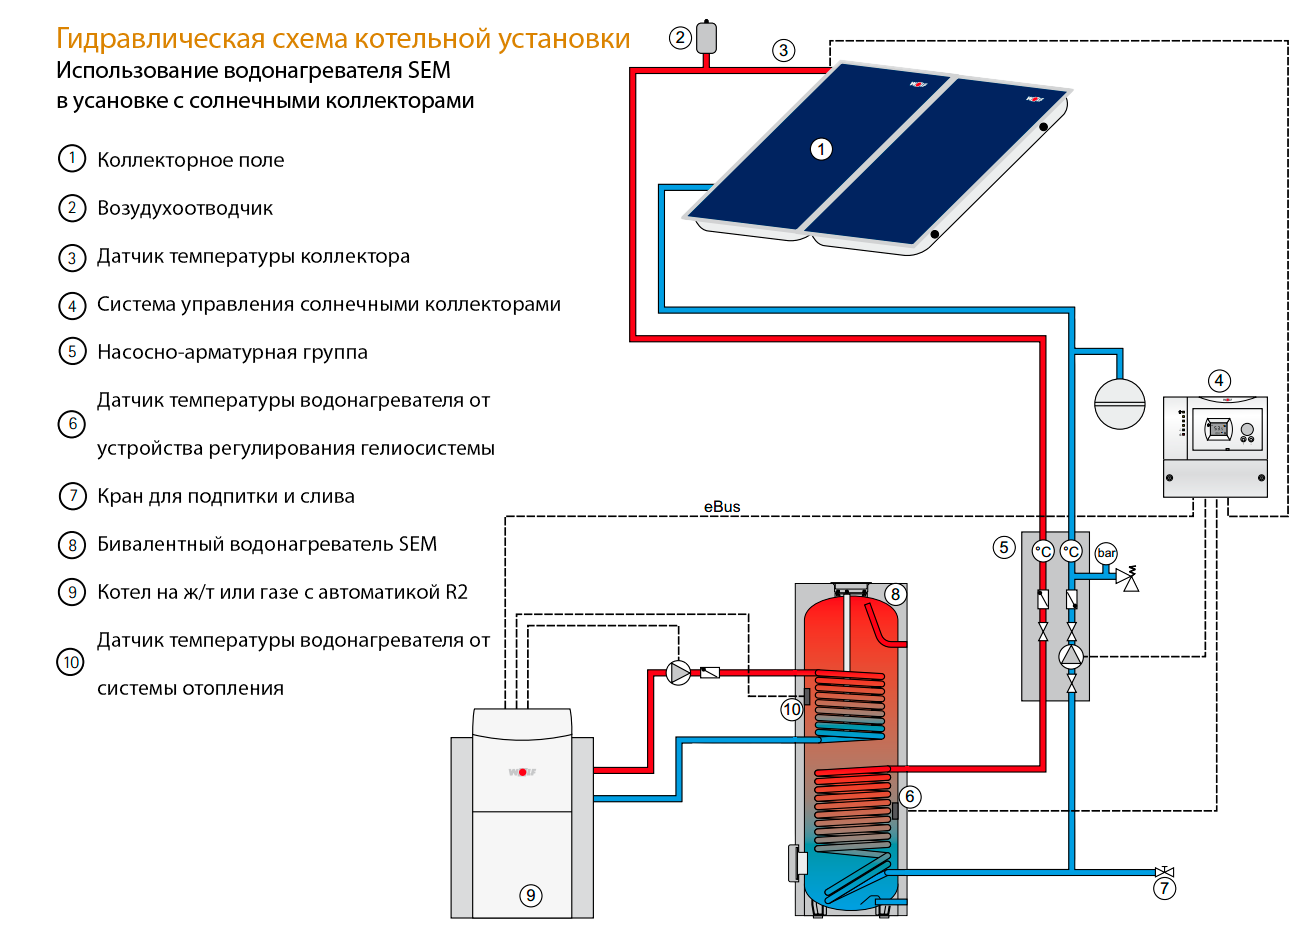 Тепловая для подогрева воды. Схема подключения солнечного коллектора к системе отопления. Схема подключения солнечного коллектора к системе ГВС. Подключение солнечного коллектора к бойлеру схема. Схема подключения солнечных коллекторов для отопления и ГВС.